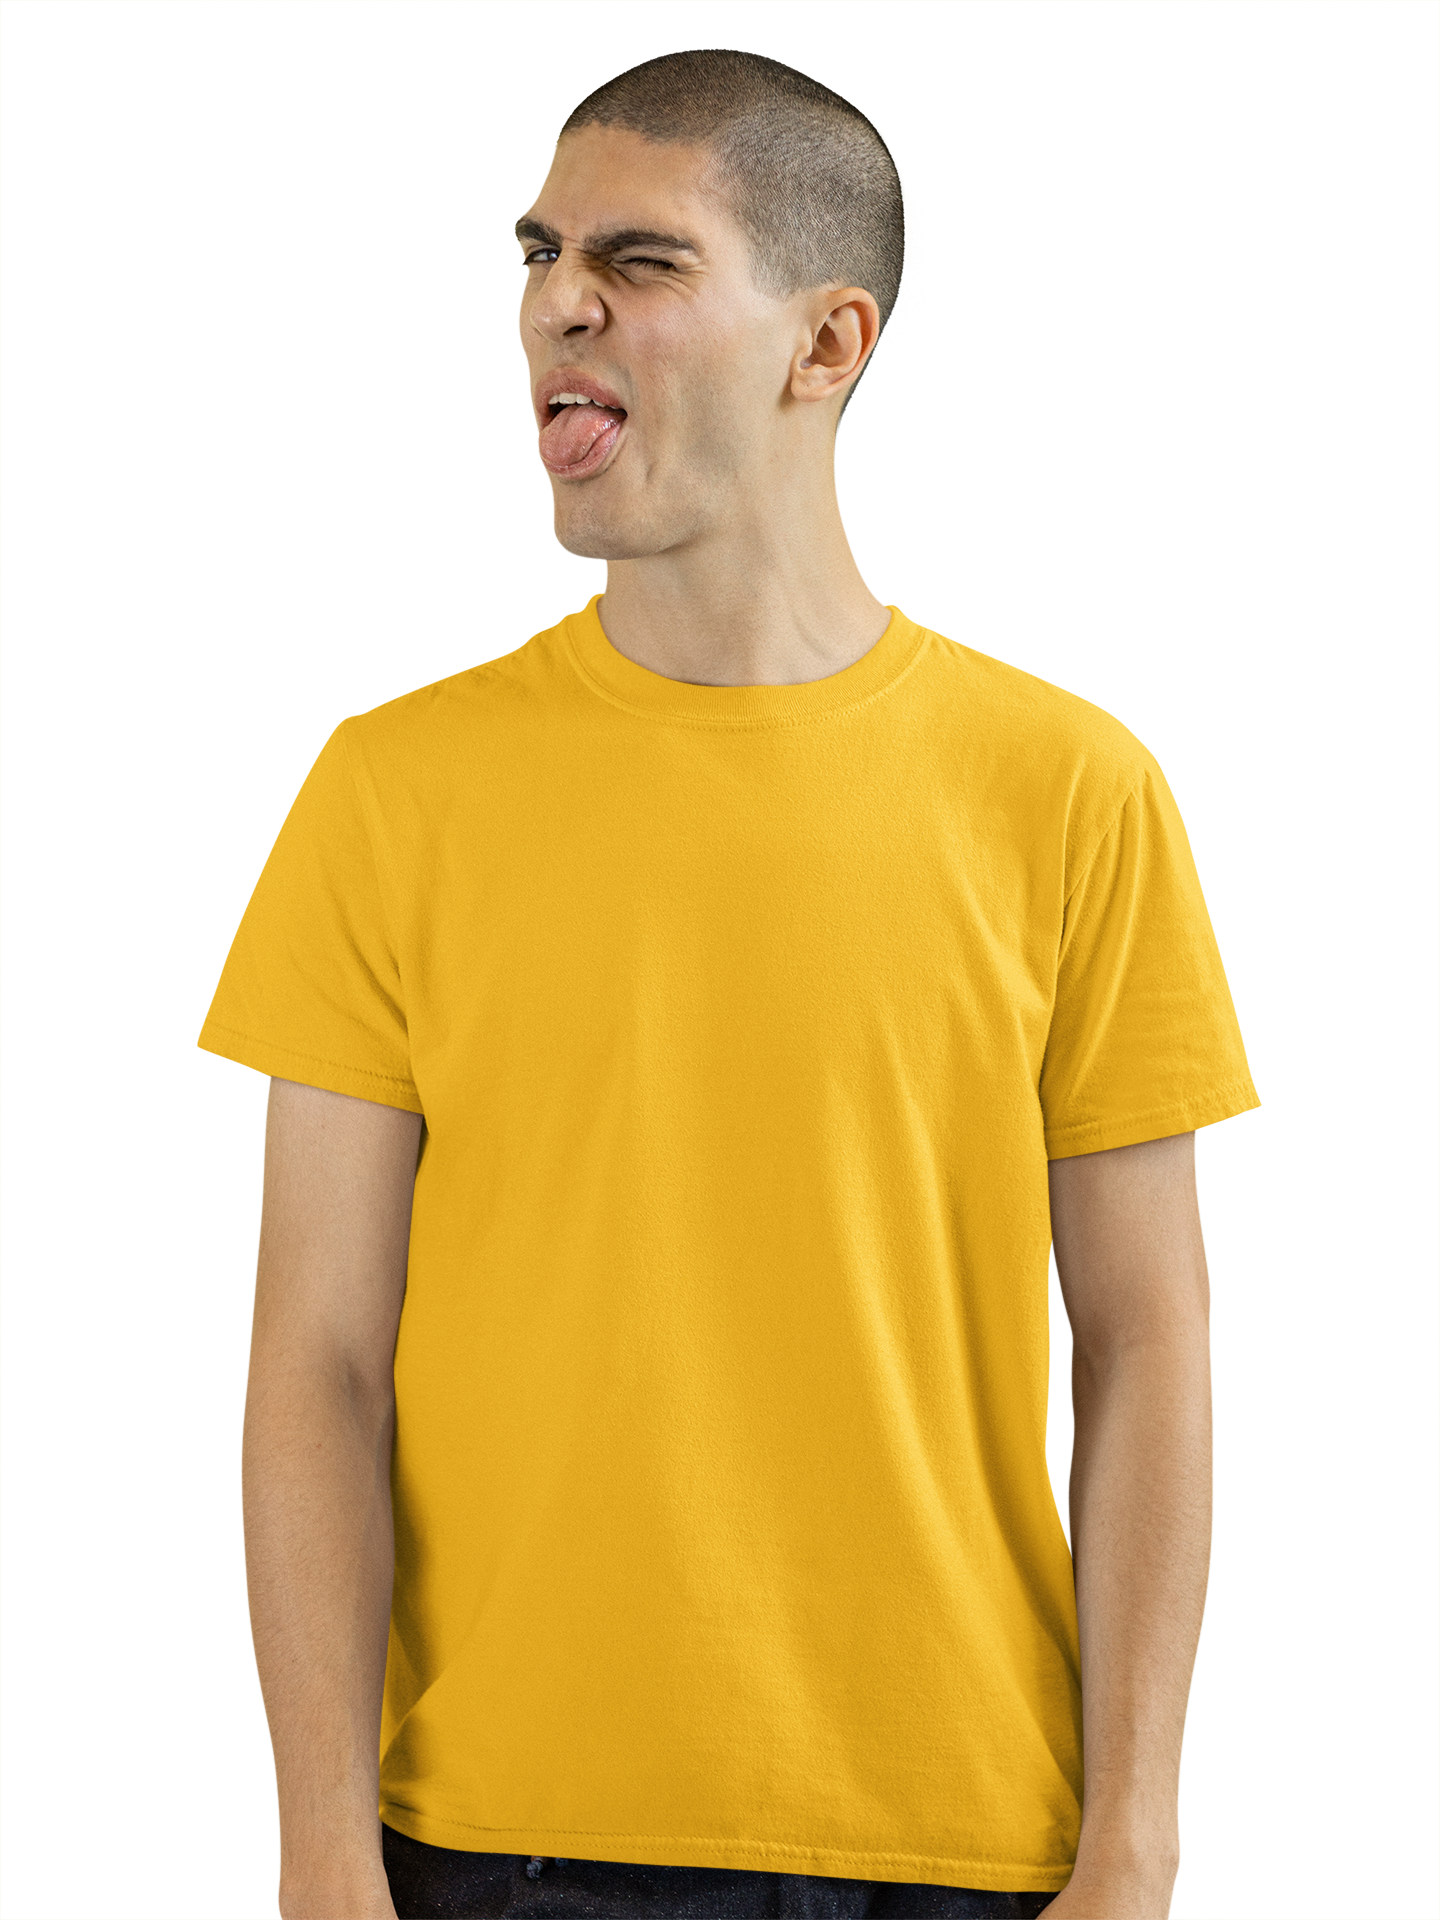 Men's Golden Yellow T-shirt